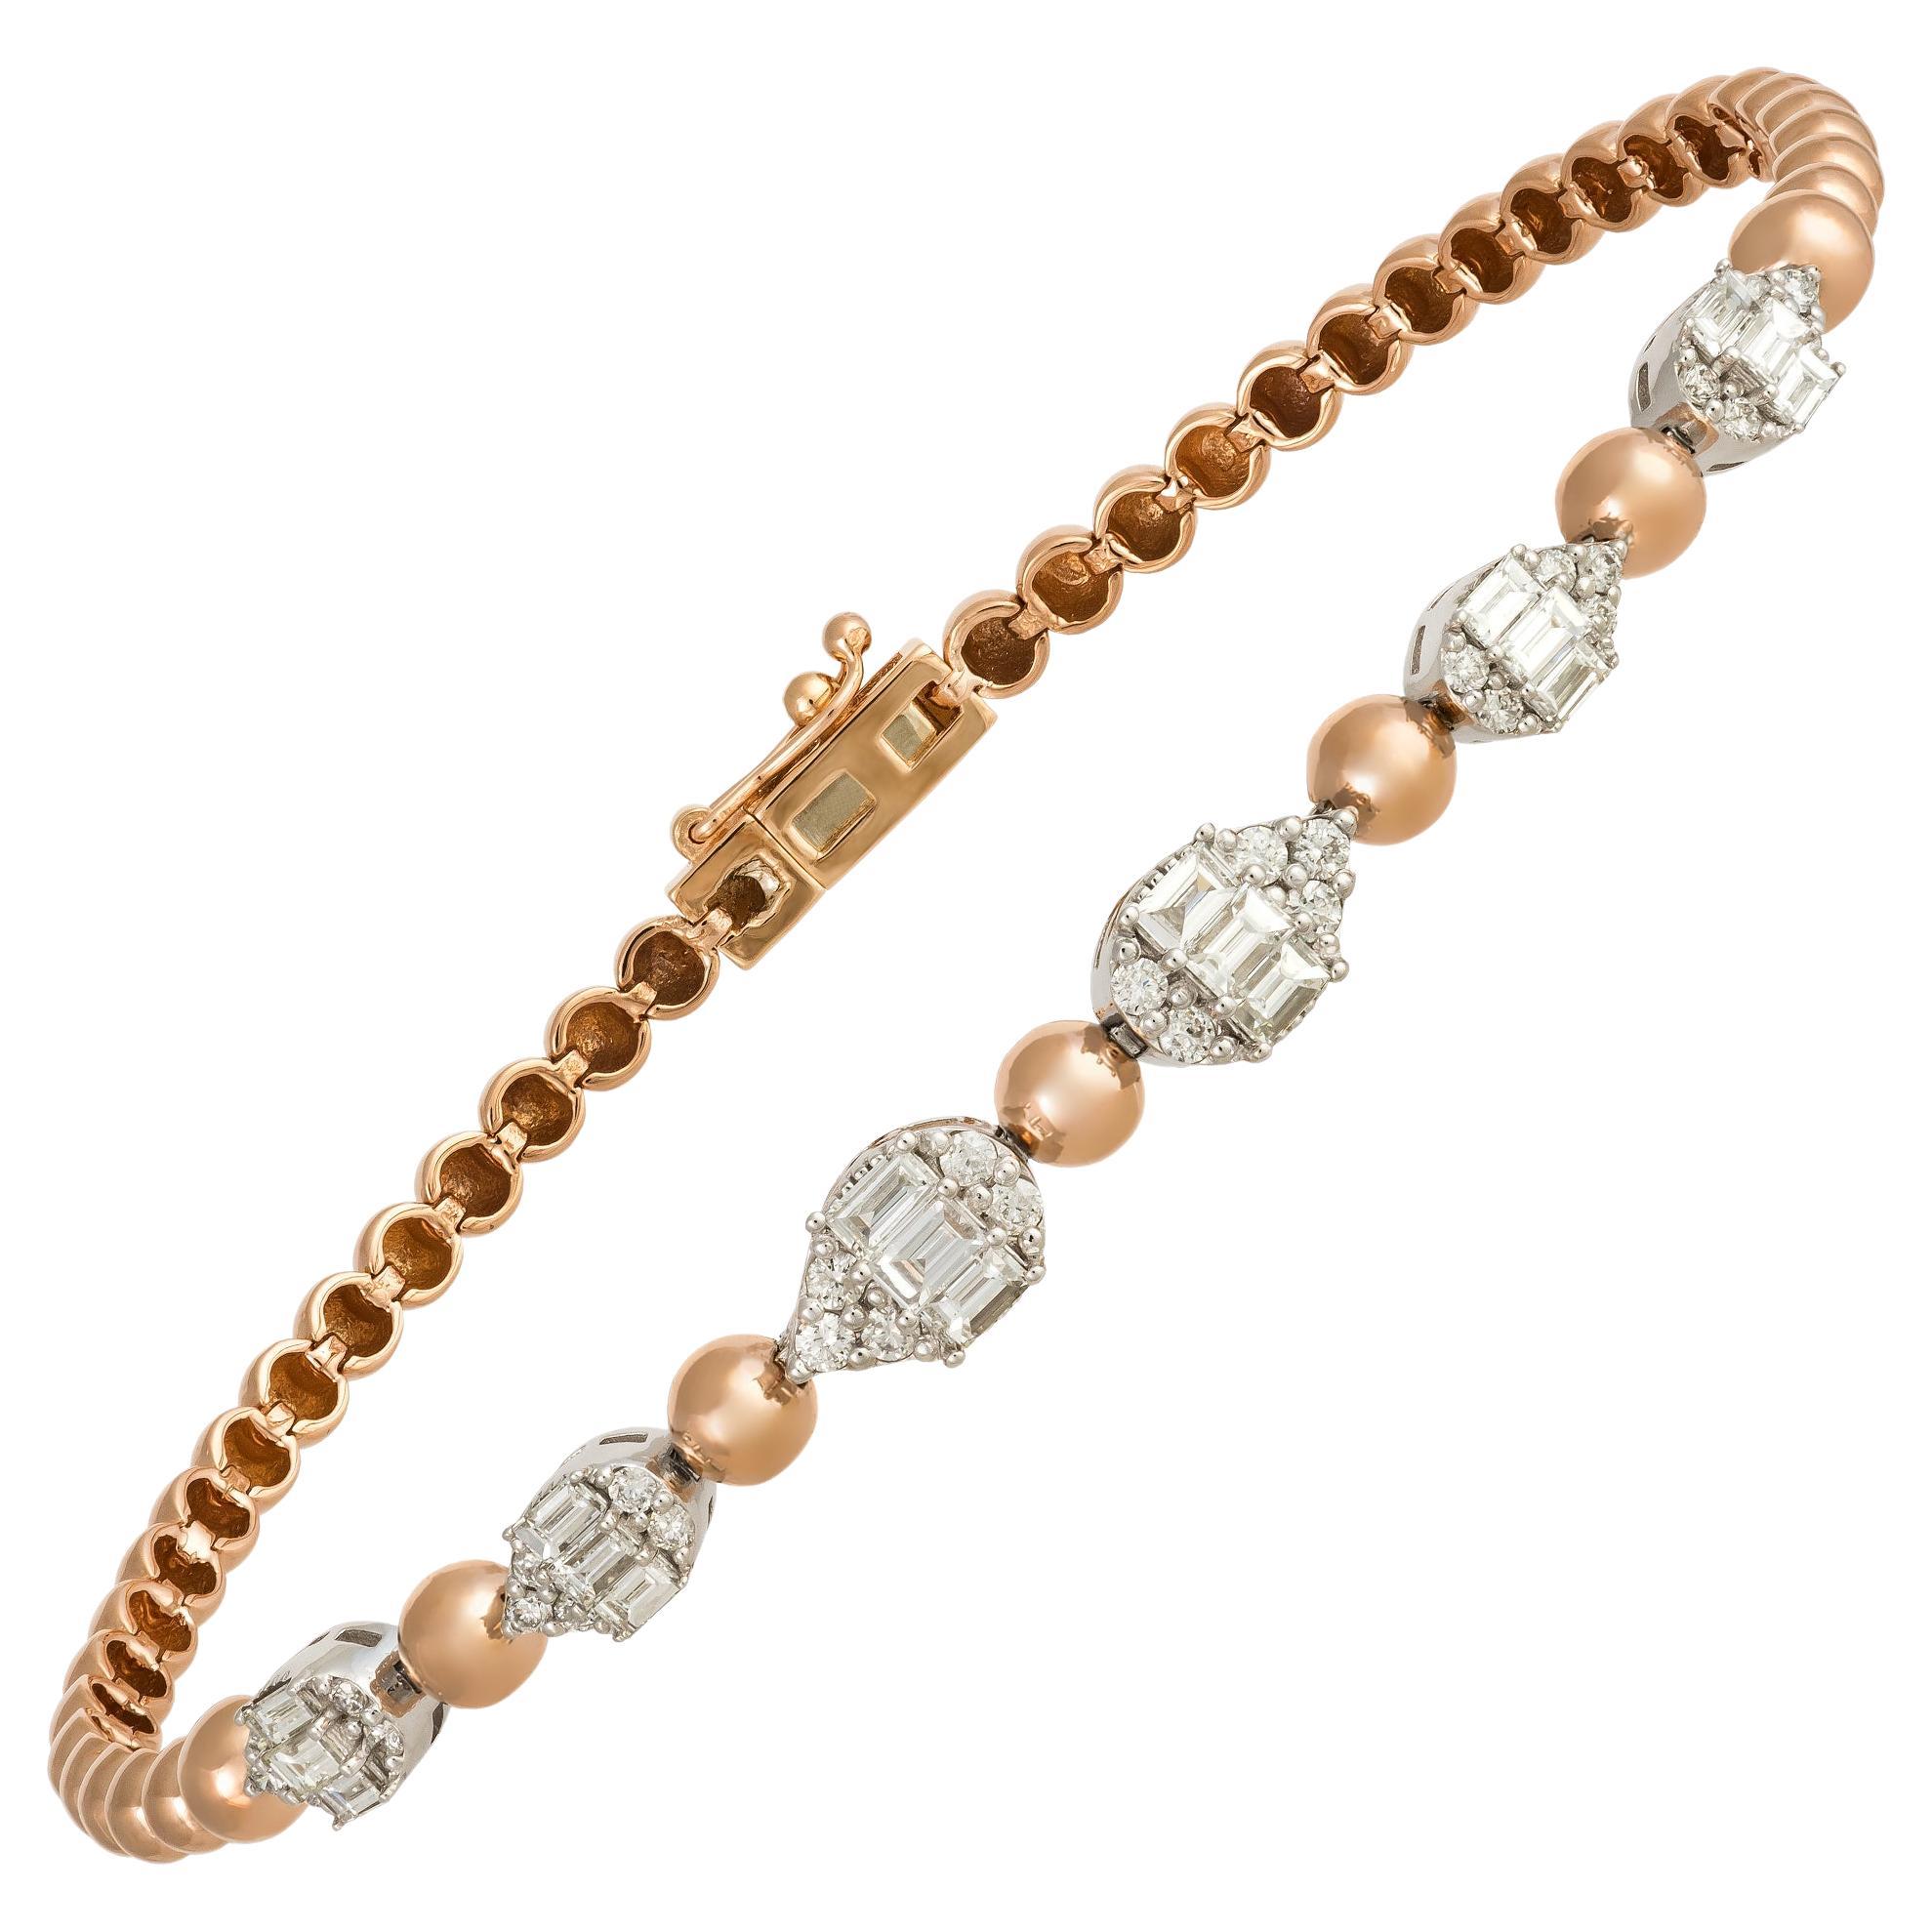 Classic White Pink Gold 18K Bracelet Diamond for Her